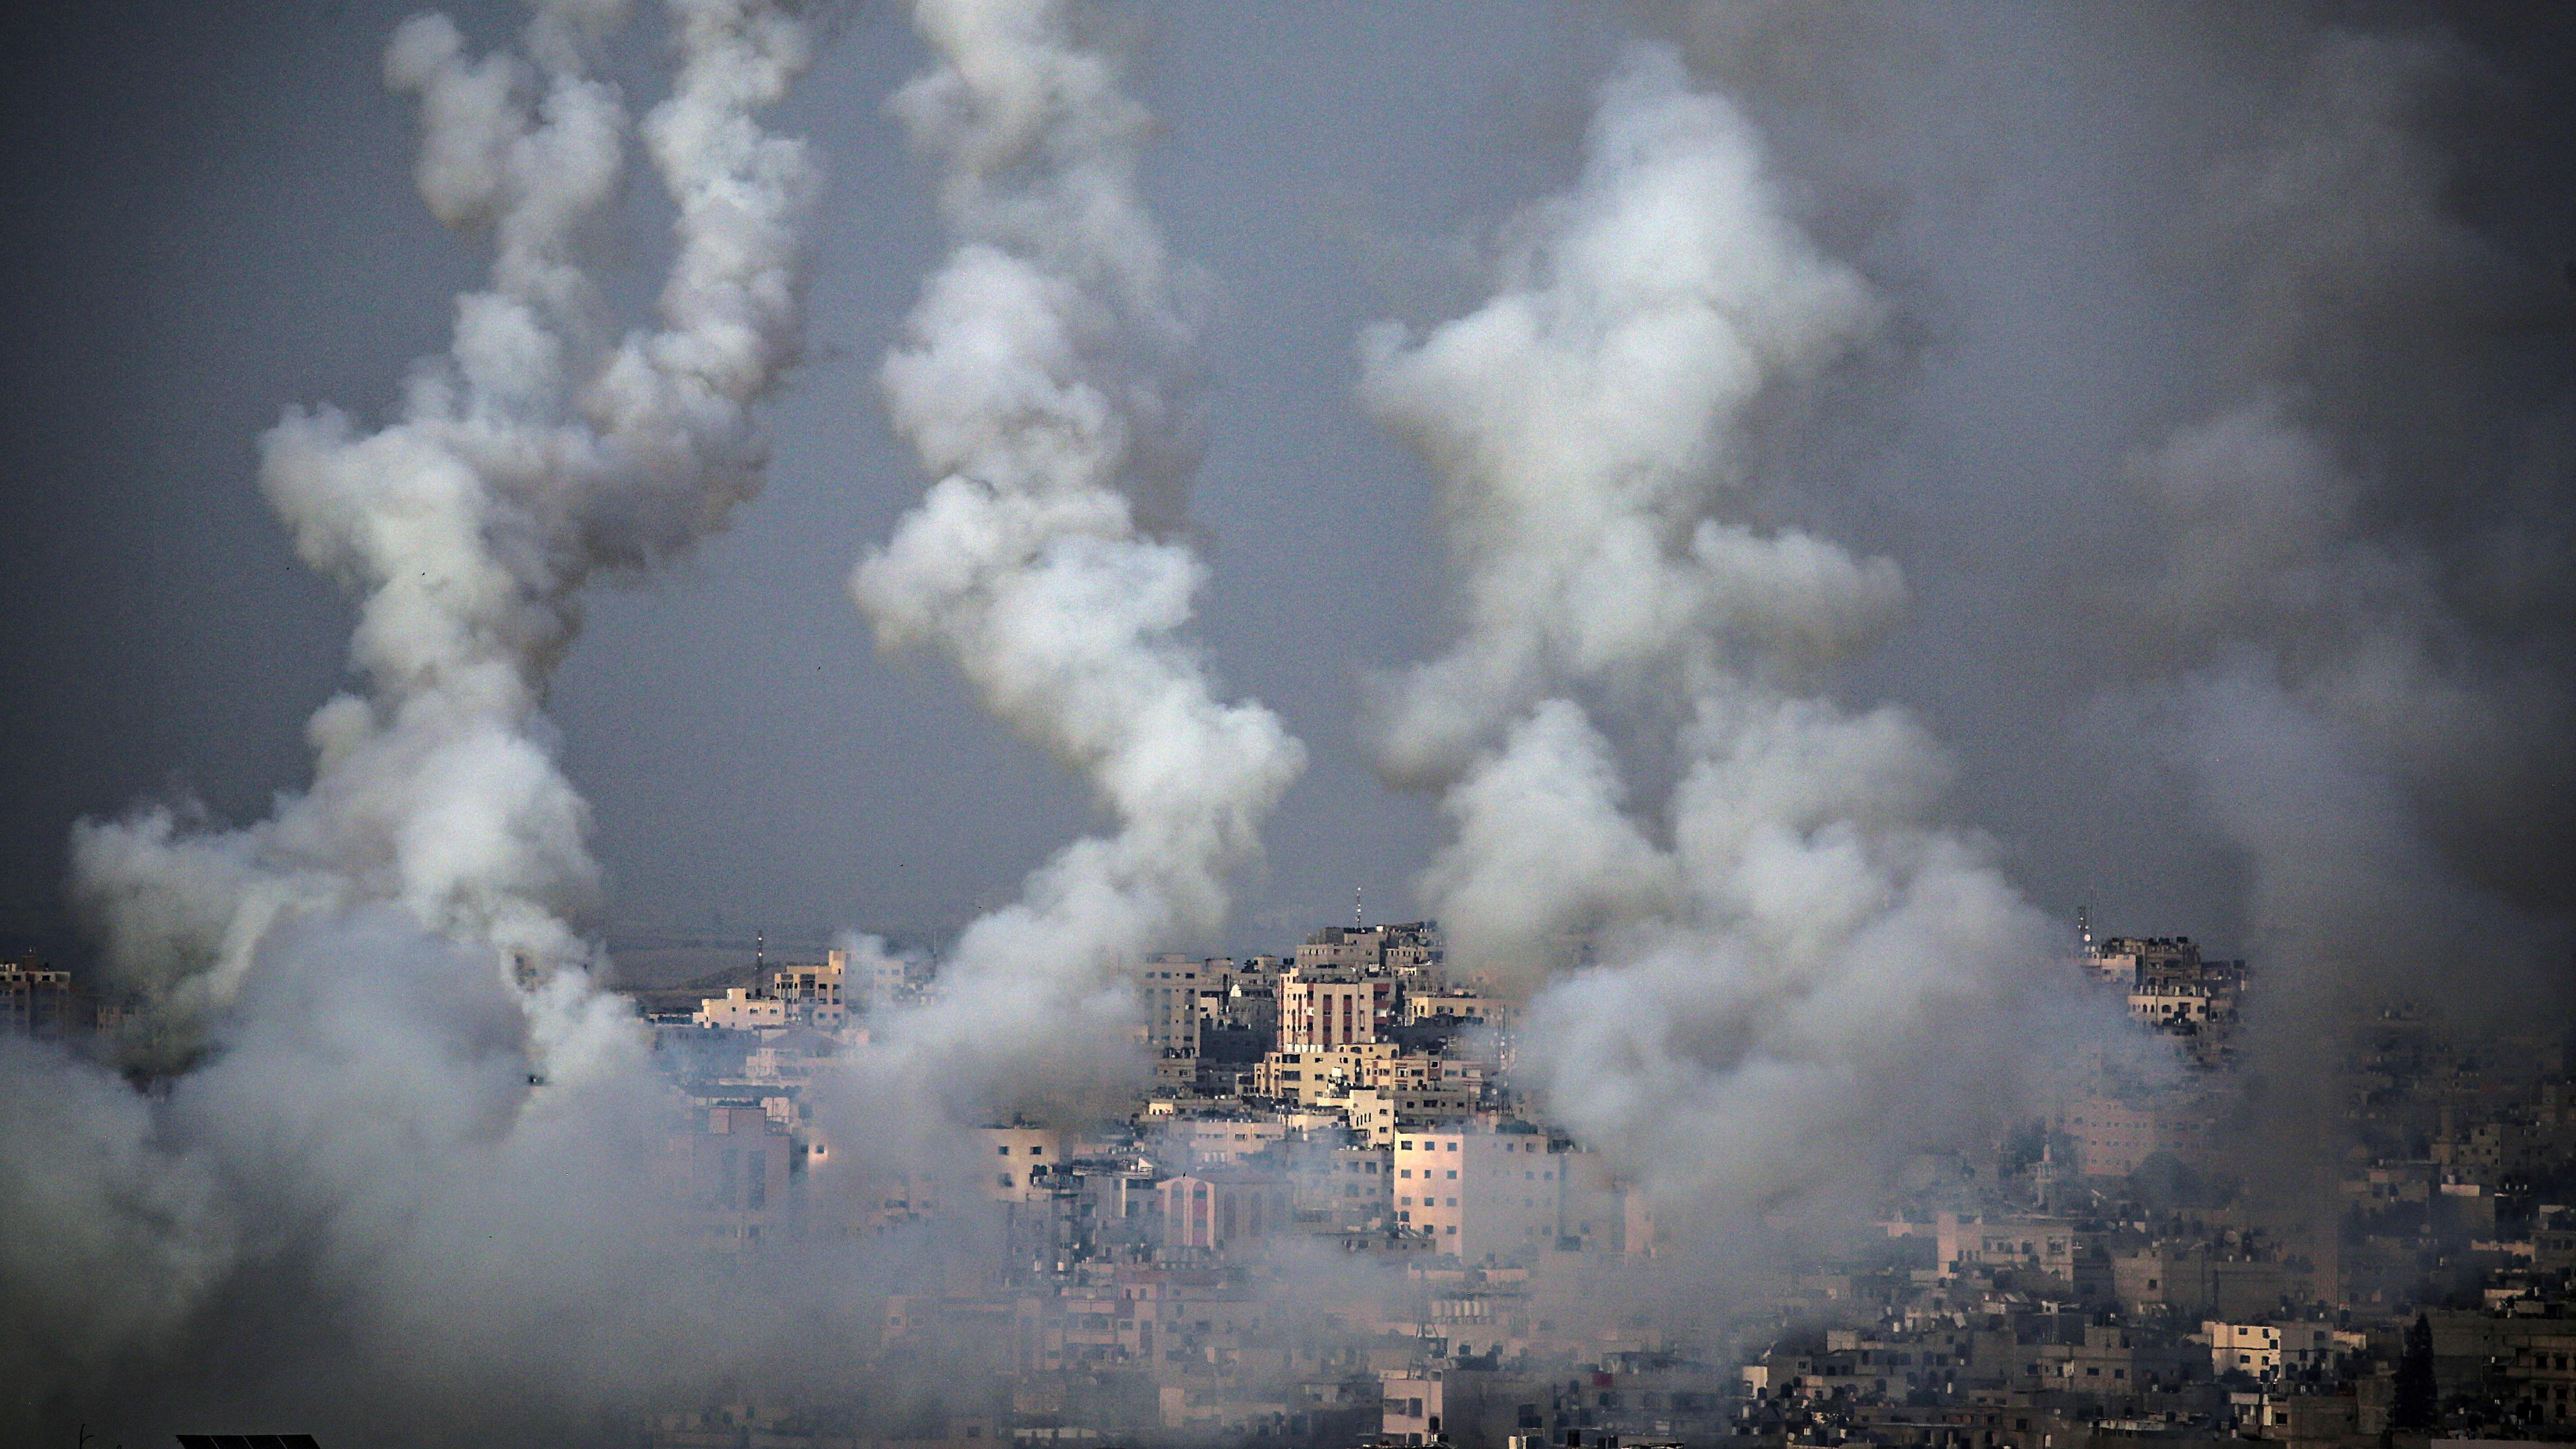 Gazasta lähteneet rakettien savuvanat taivaalla kaupungin yläpuolella.